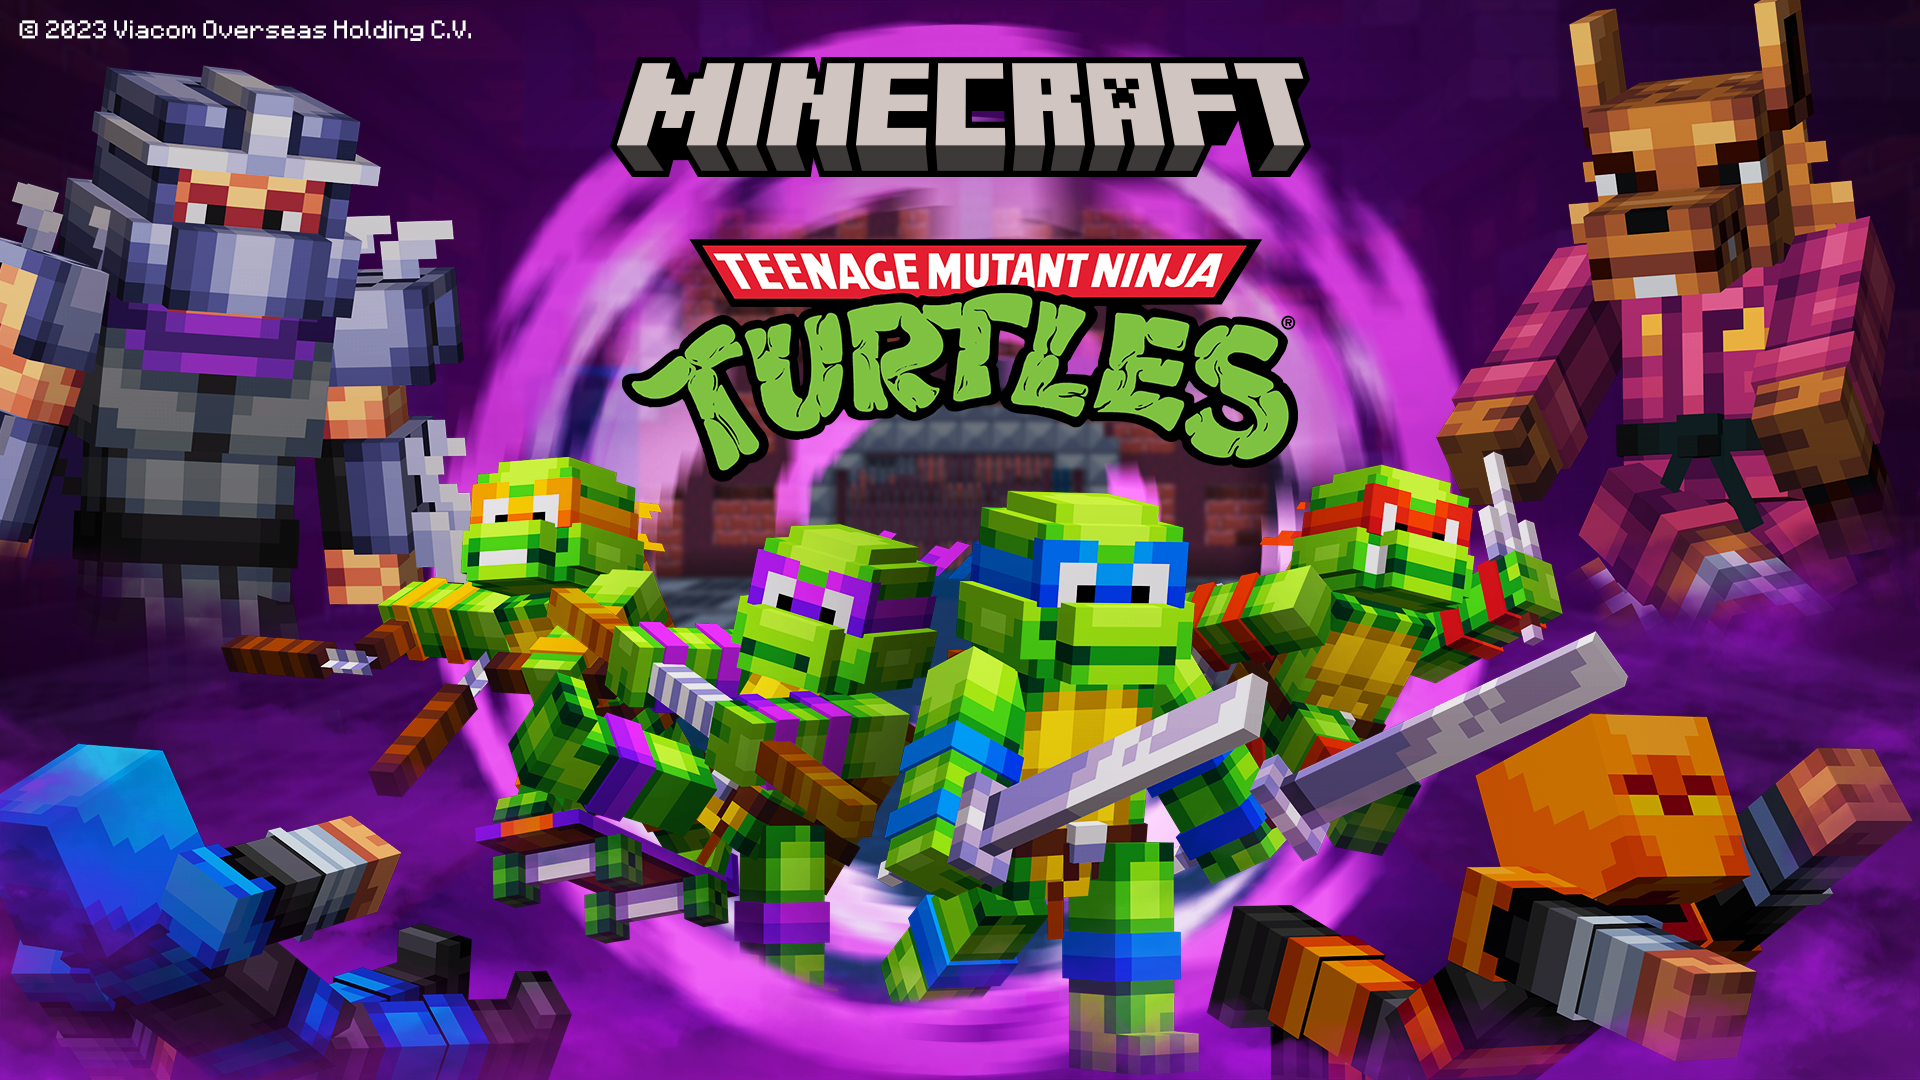 Teenage Mutant Ninja Turtles on the Minecraft Marketplace